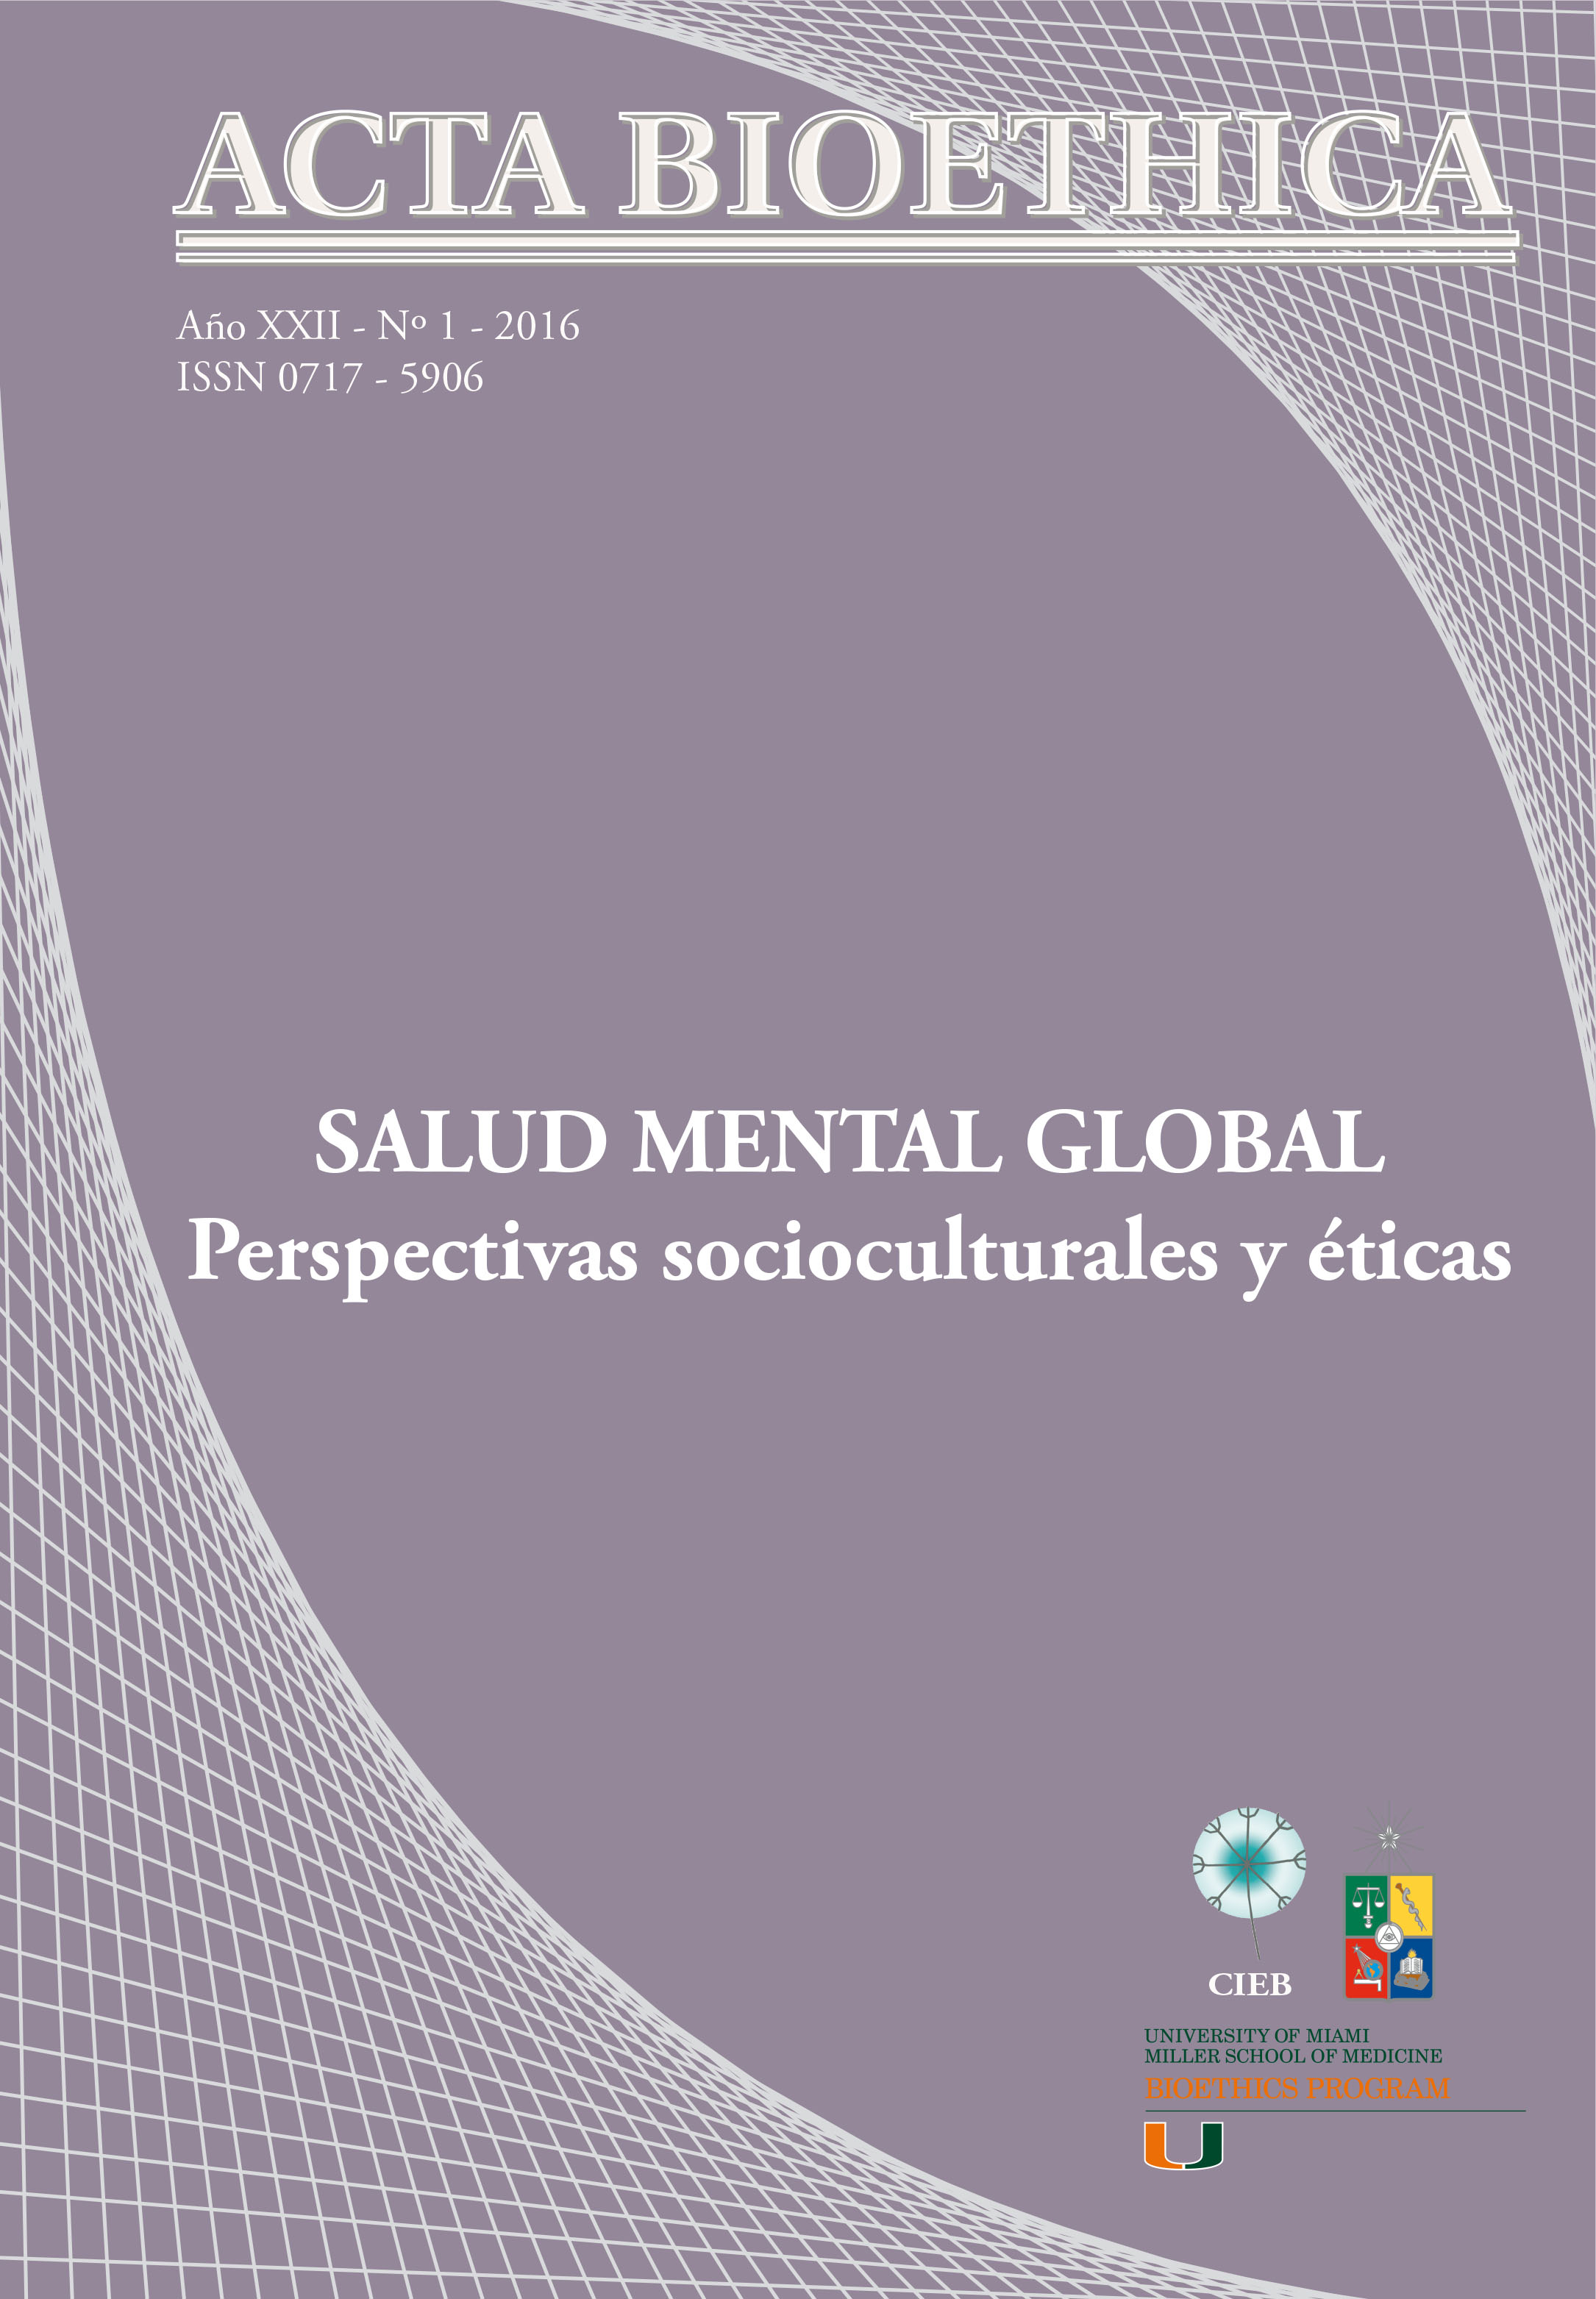 											Ver Vol. 22 Núm. 1 (2016): Salud Mental Global: perspectivas socioculturales y éticas
										